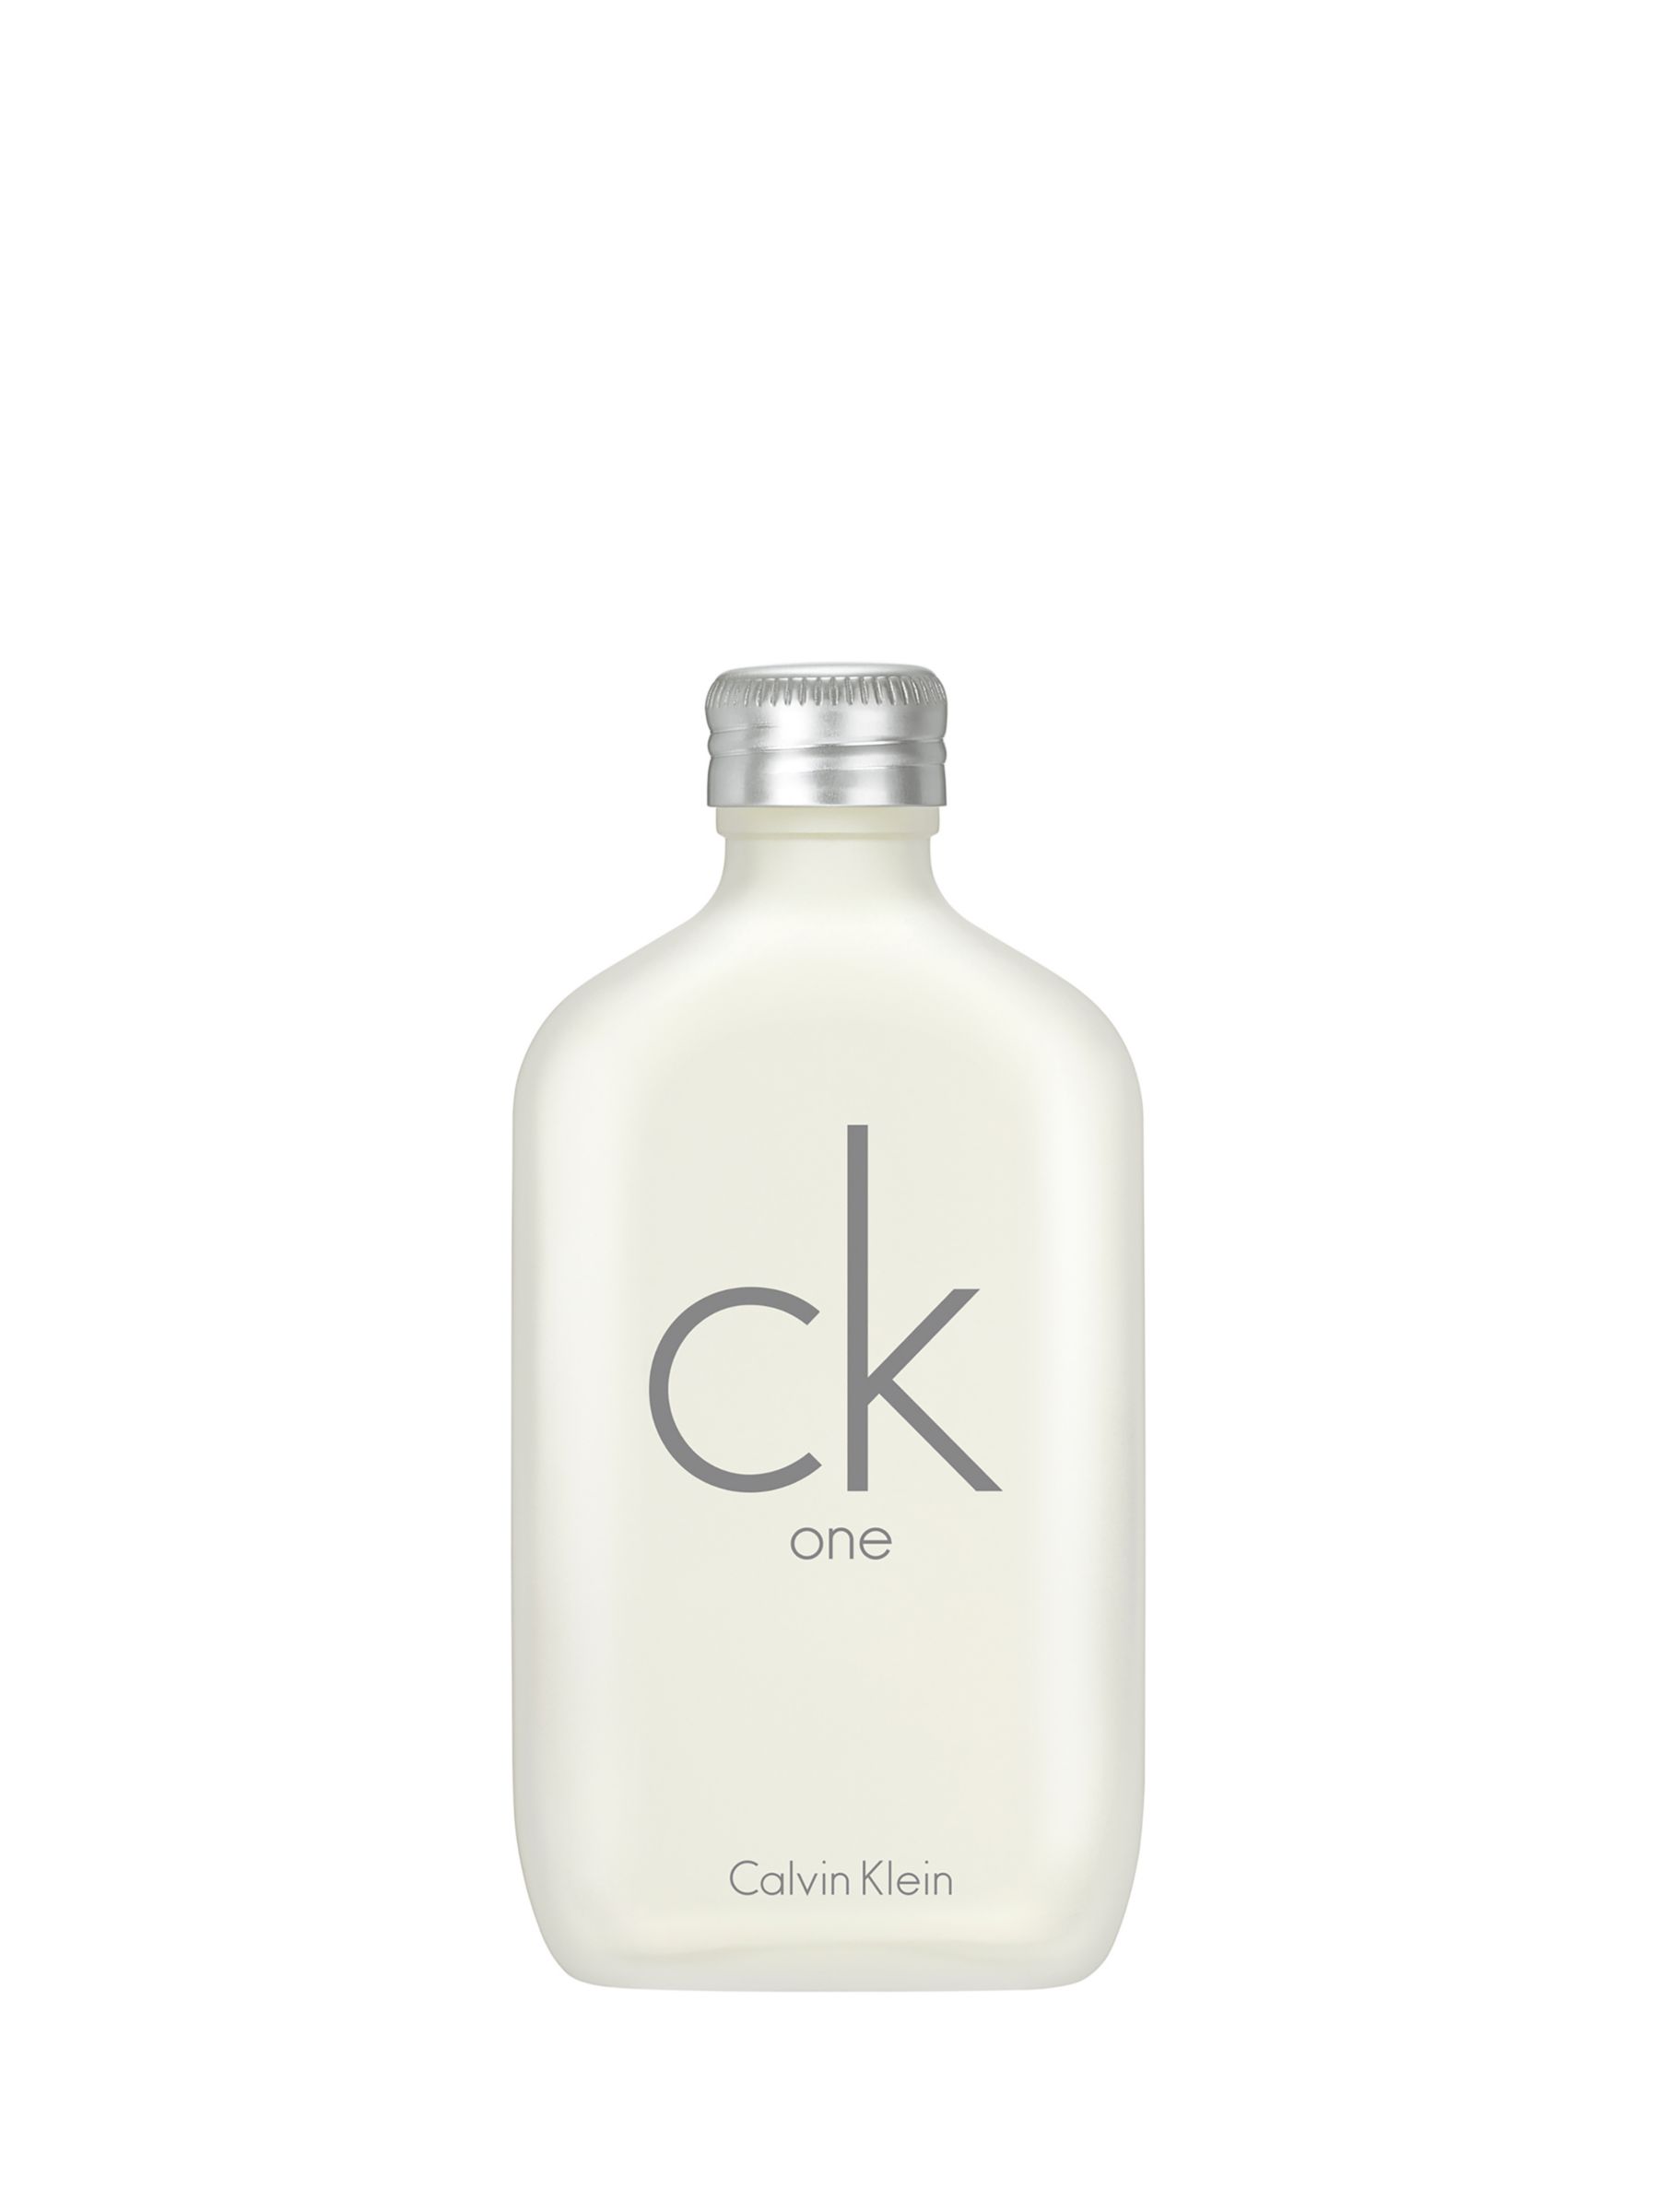 Calvin Klein CK ONE Eau de Toilette, 100ml at John Lewis Partners